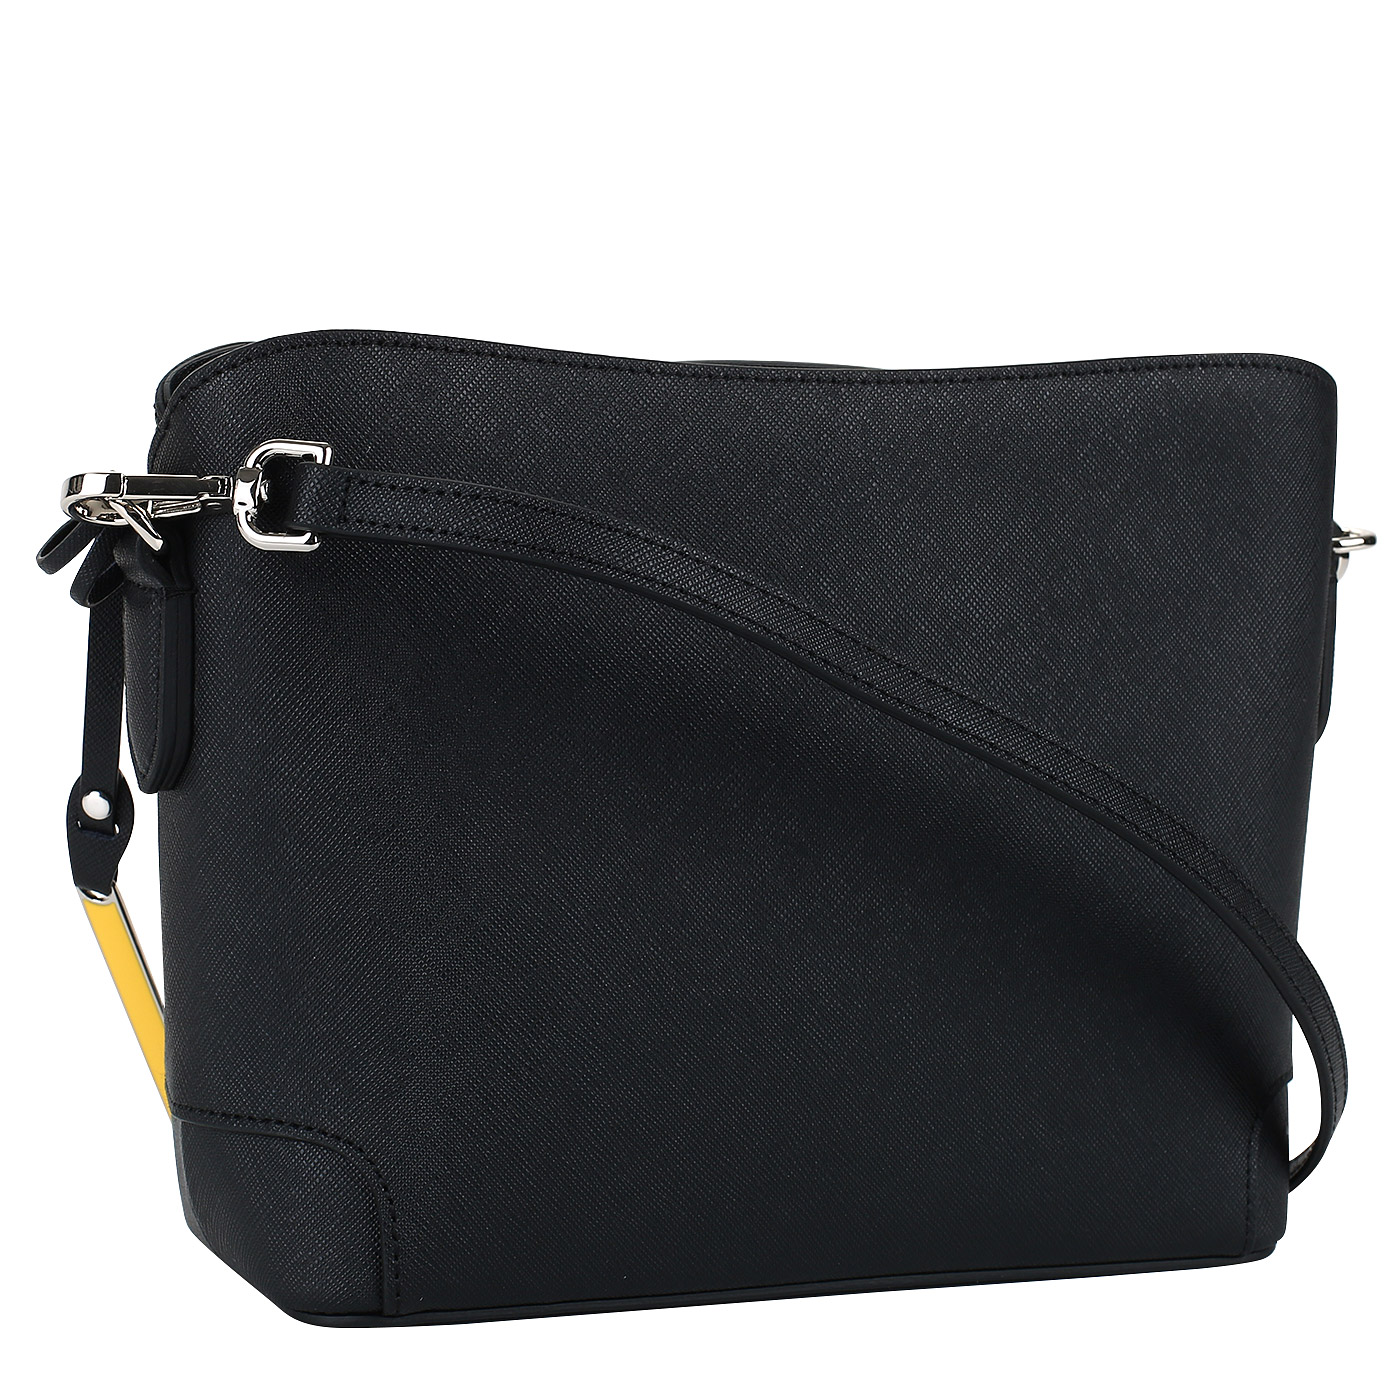 Черная женская сафьяновая сумочка Cromia Wisper